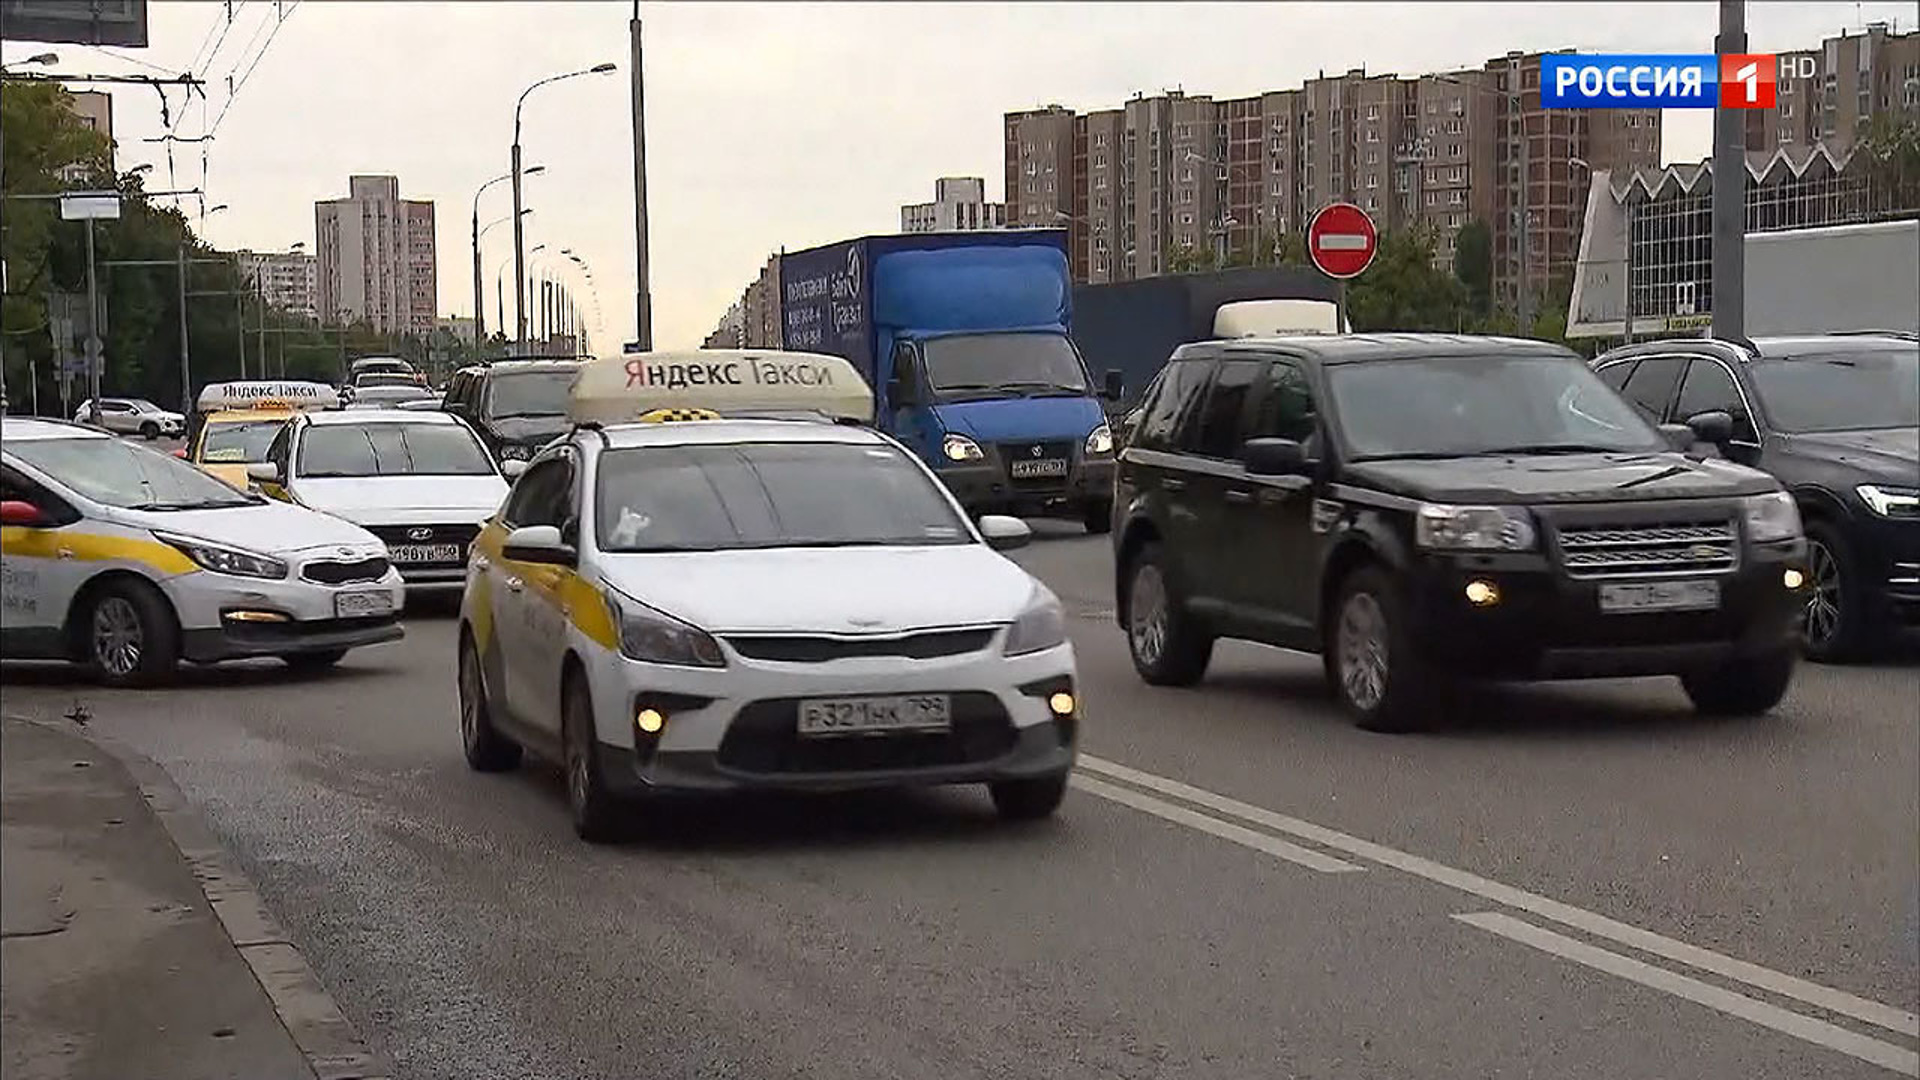 Можно ли ездить такси по автобусной полосе. Автобусная полоса для такси. Выделенная полоса для такси. Выделенные полосы в Москве для такси. Такси по автобусной полосе.